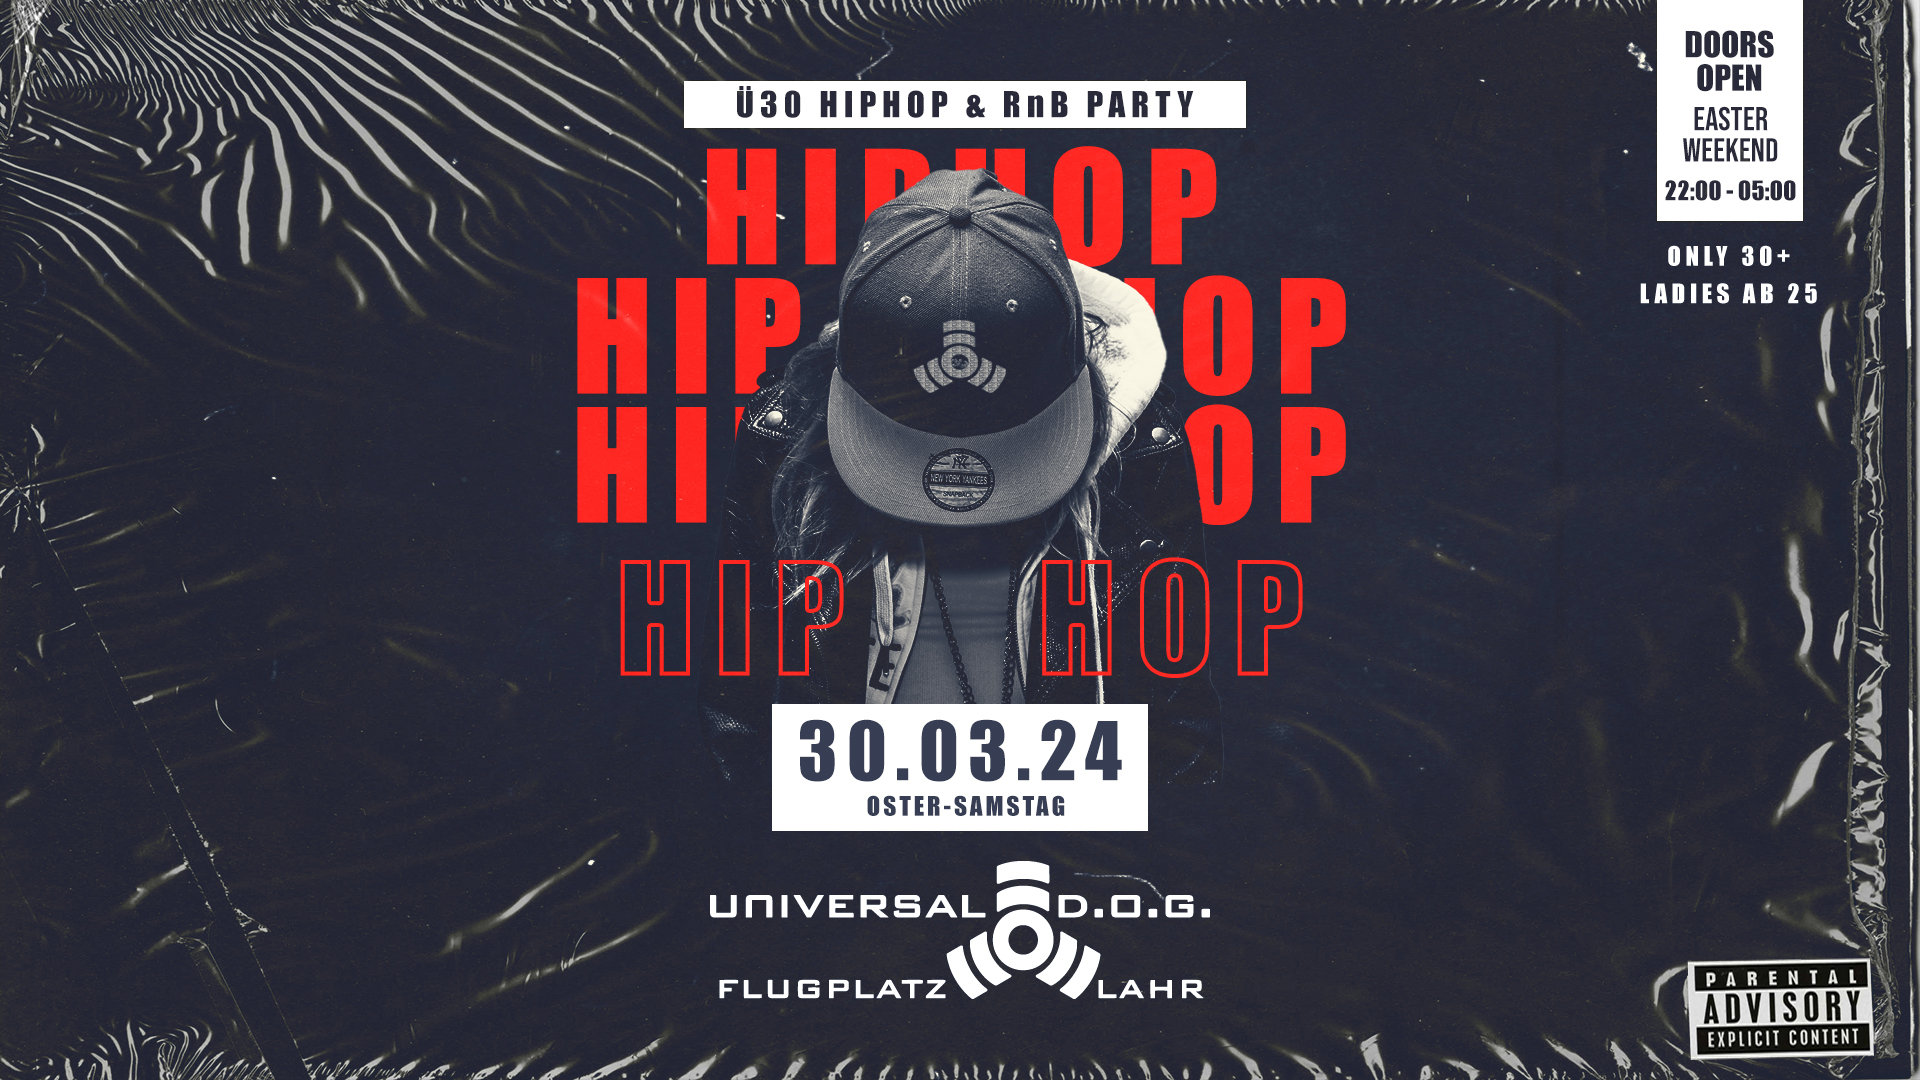 HipHop RnB Party